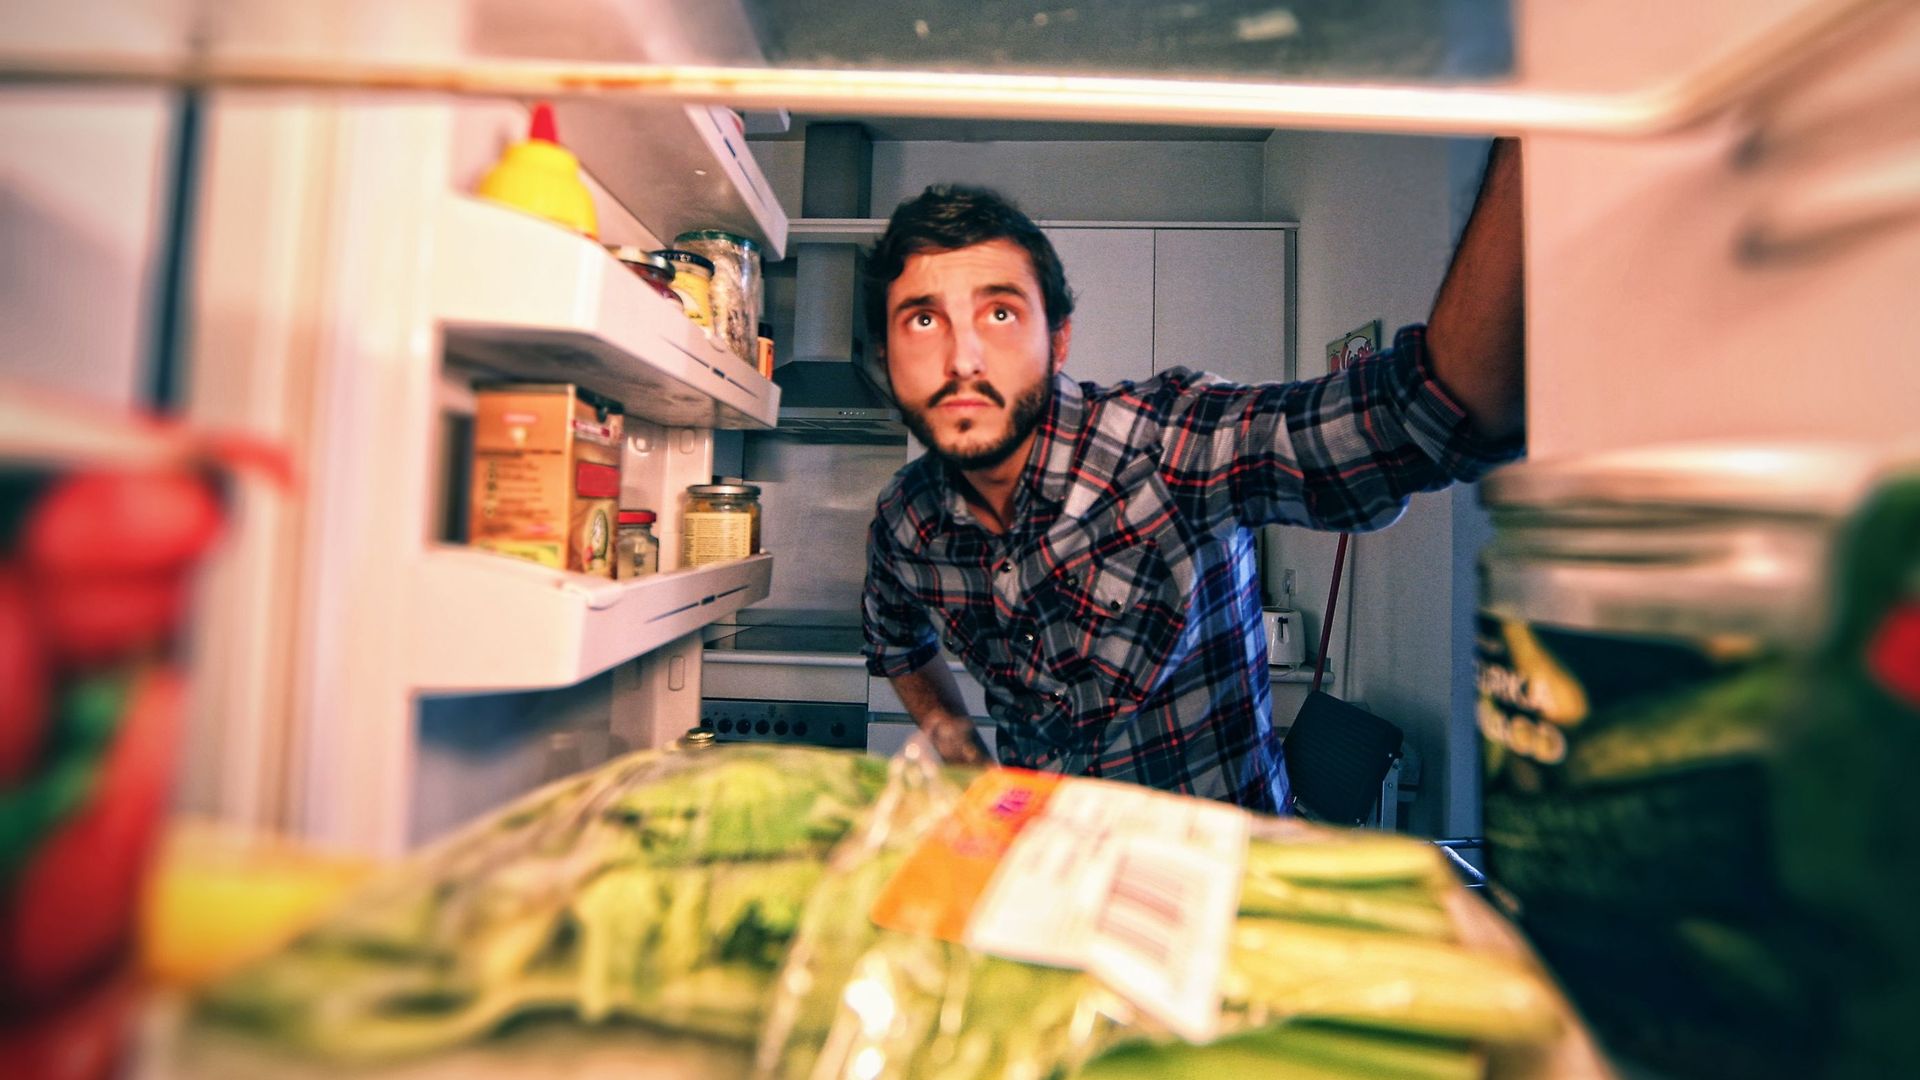 Baja tecnología: “¡Puedes prescindir de frigorífico durante 8 meses al año!”